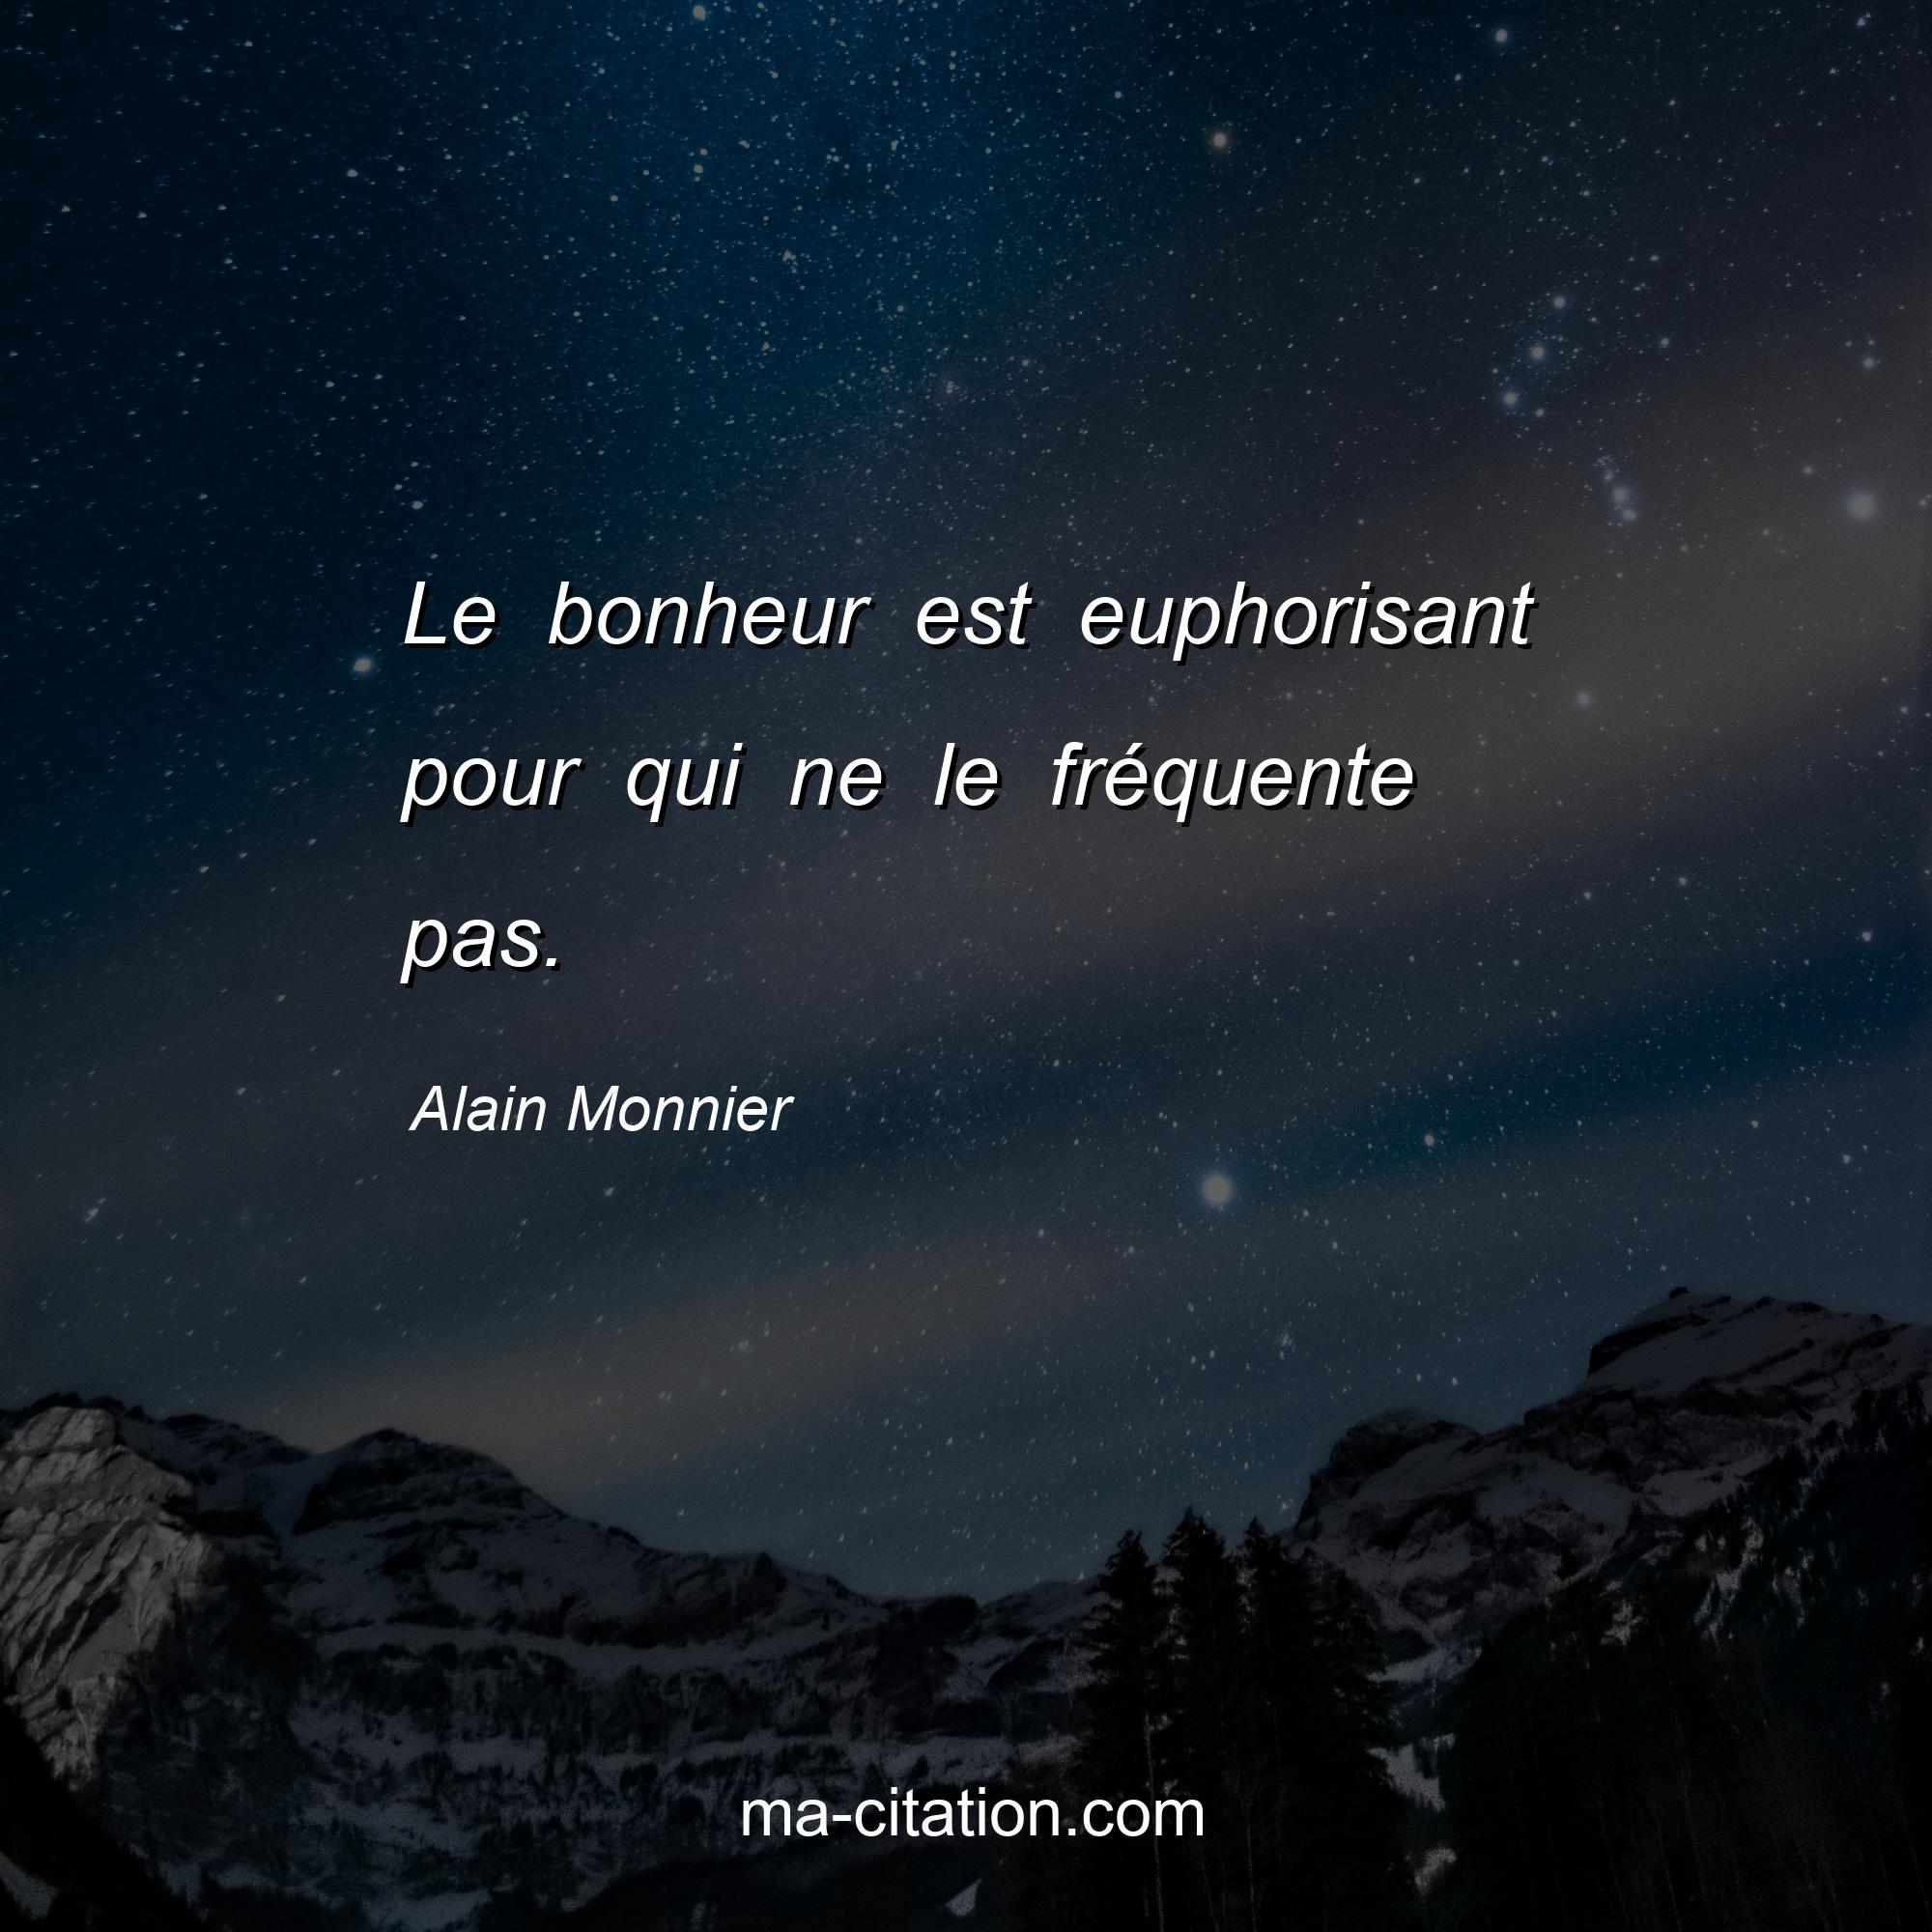 Alain Monnier : Le bonheur est euphorisant pour qui ne le fréquente pas.